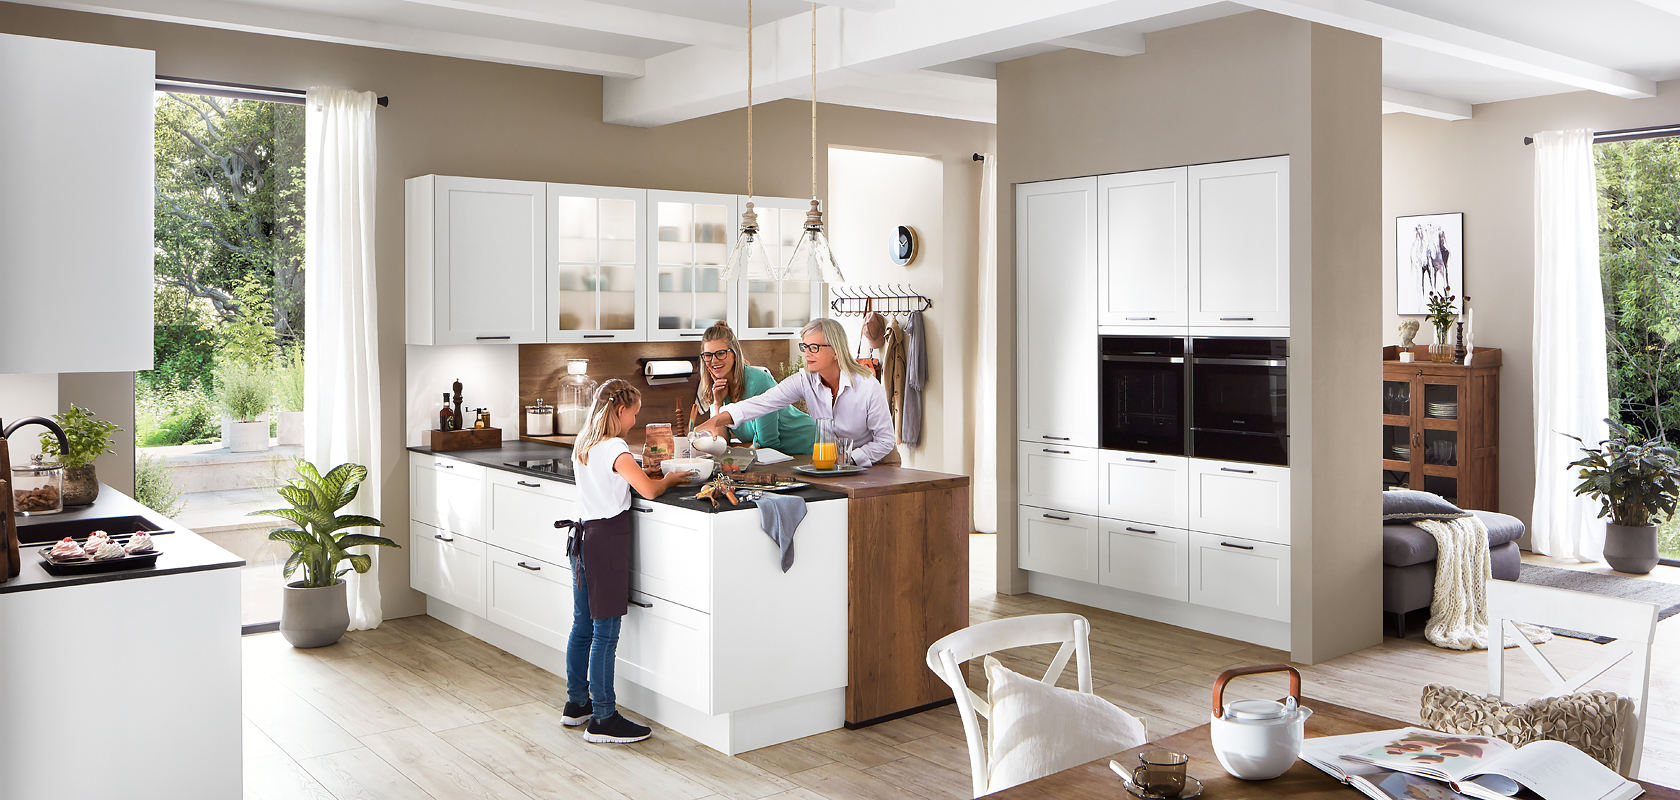 Una cucina moderna piena di luce naturale dove una famiglia trascorre del tempo insieme, con eleganti armadi bianchi e elettrodomestici in acciaio inossidabile.